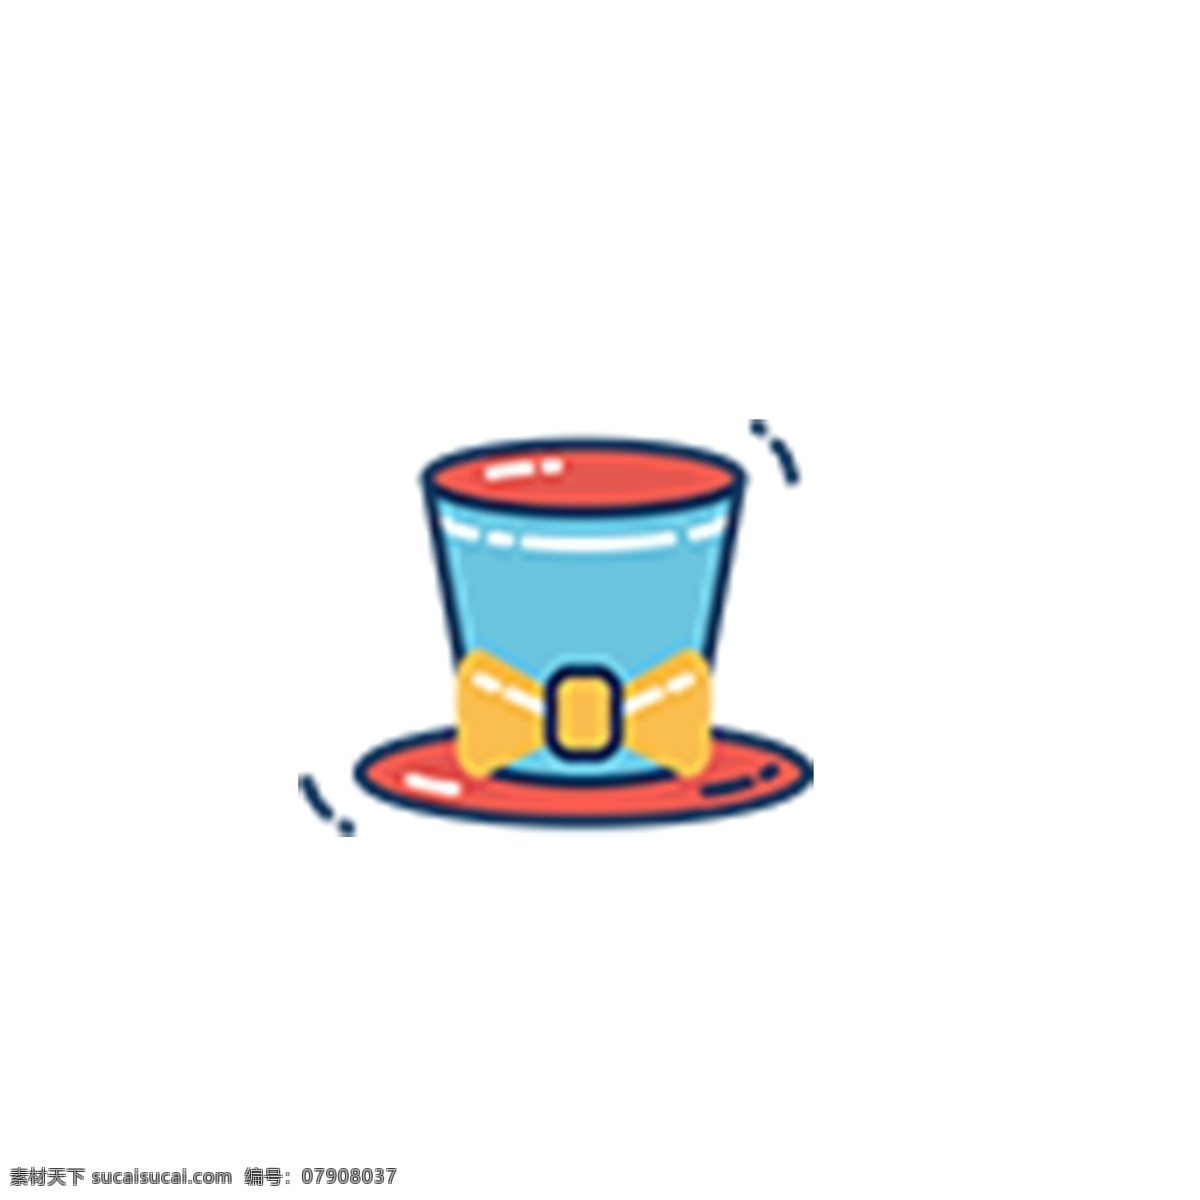 卡通 蓝色 杯子 免 抠 图 饮水的杯子 ui应用图标 电脑图标 网页图标 卡通图案 卡通插画 免抠图